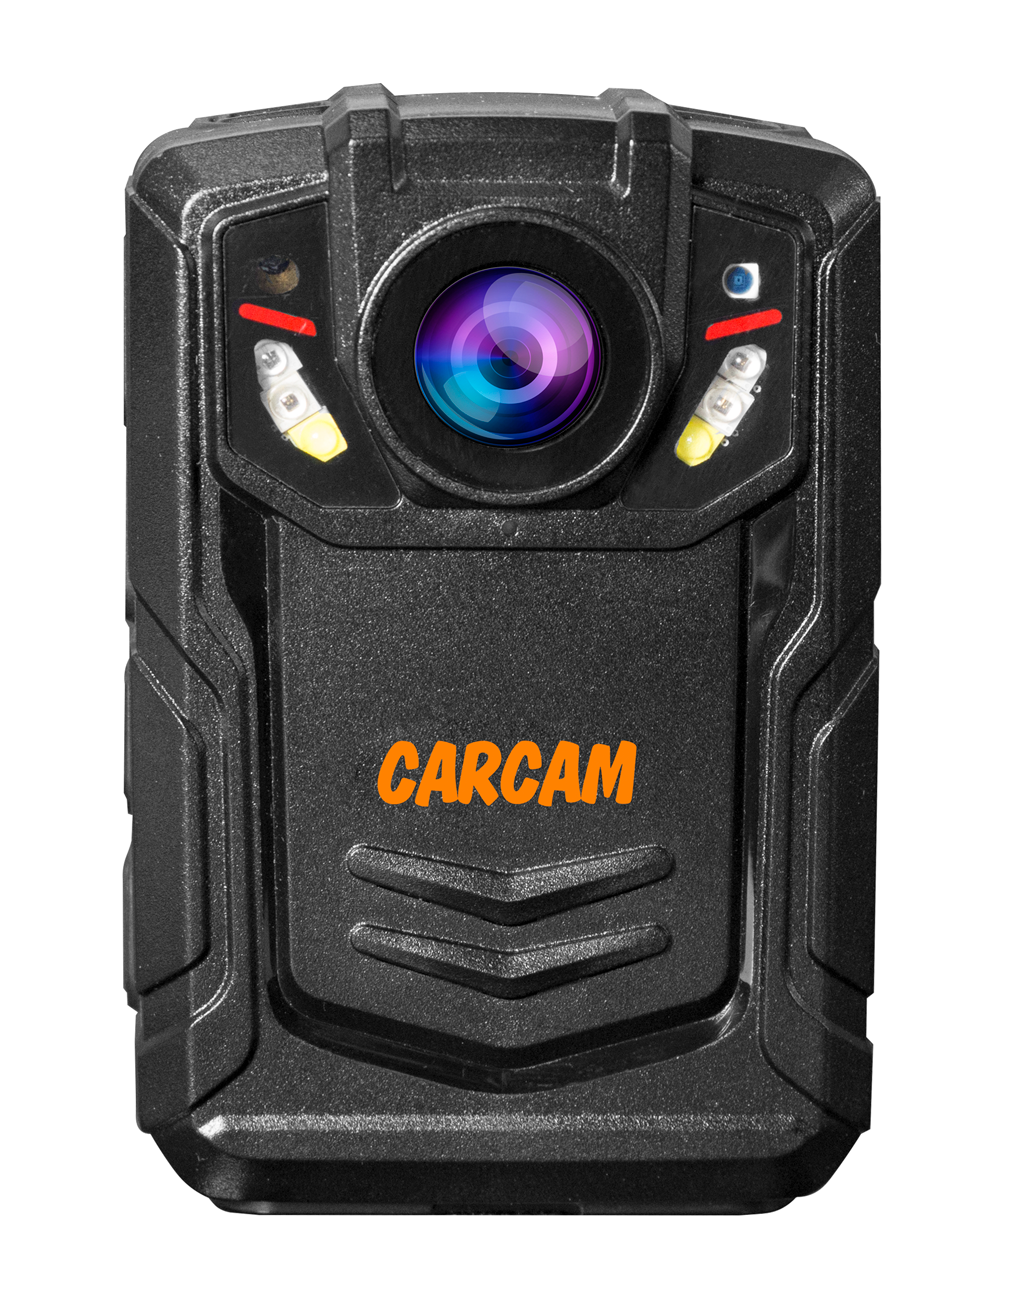 Персональный Quad HD видеорегистратор  CARCAM COMBAT 2S/4G 256Gb персональный quad hd видеорегистратор для работников технических объектов carcam combat 2s prof 64gb